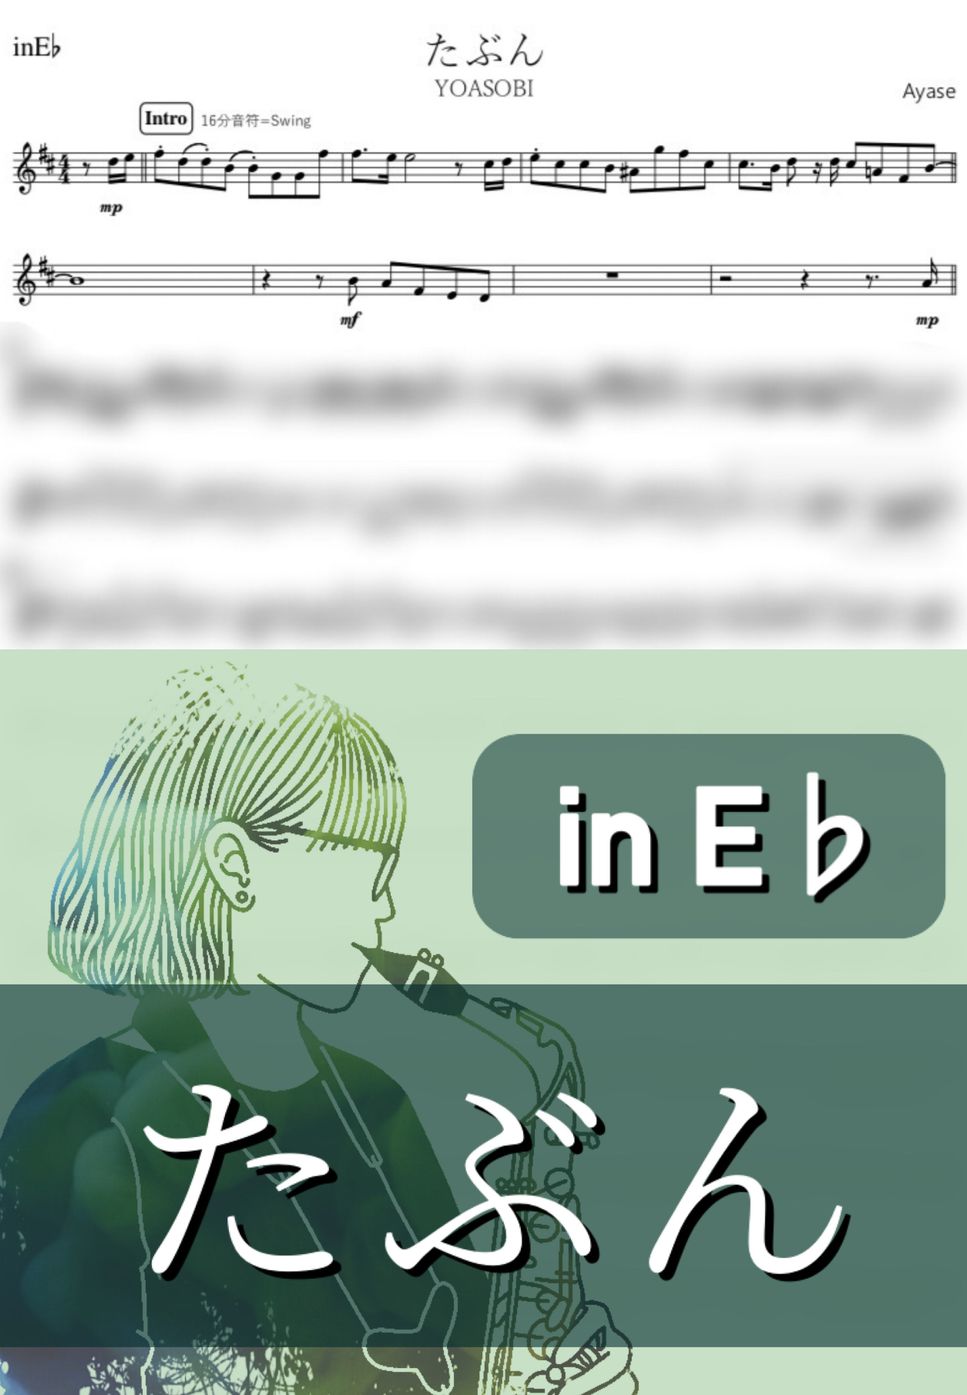 YOASOBI - たぶん (E♭) by kanamusic